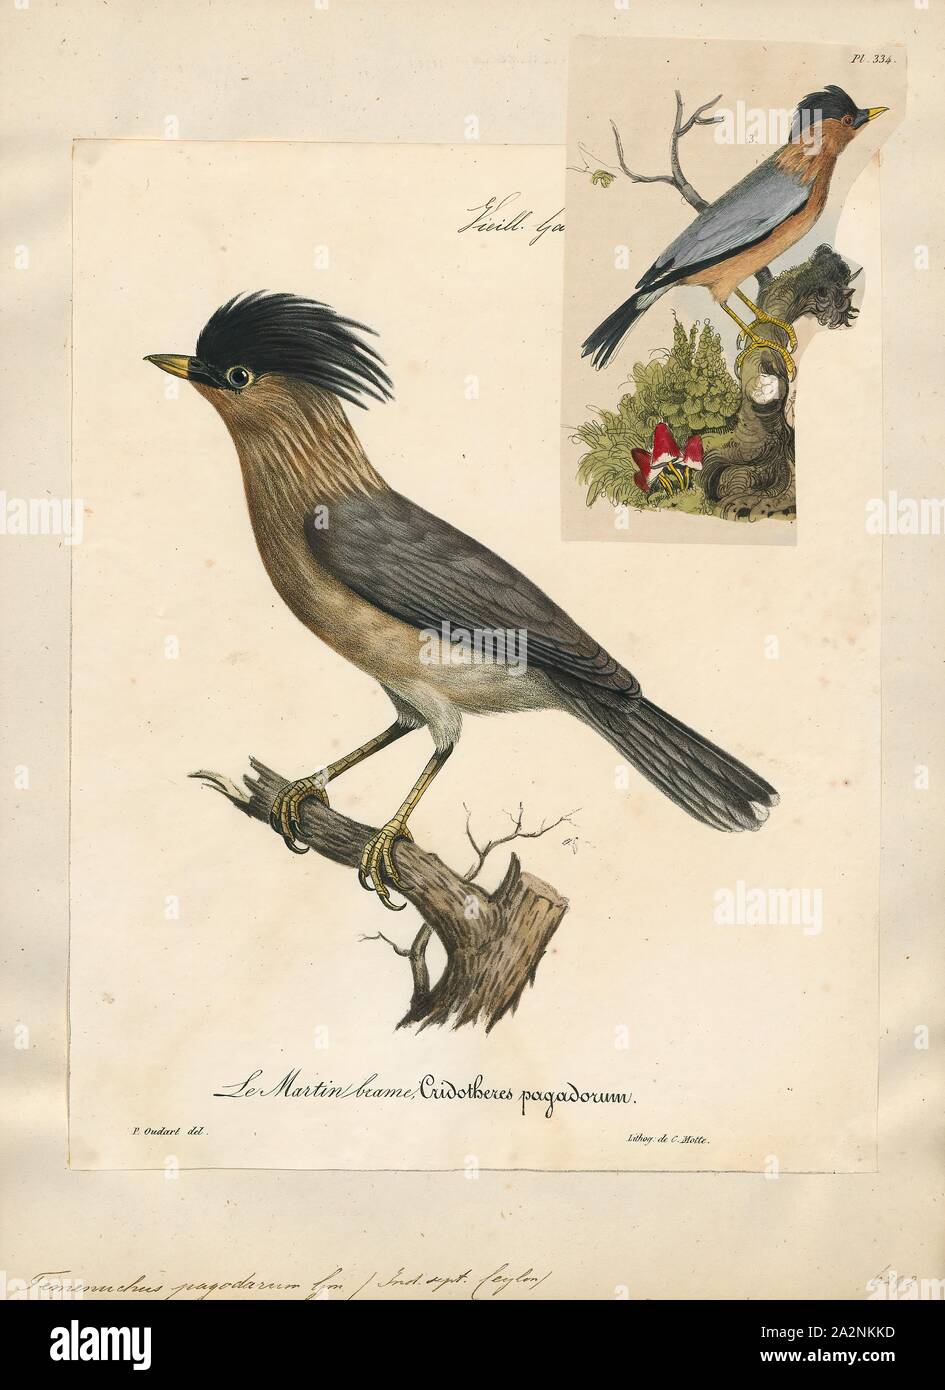 Temenuchus pagodarum brahminy, Imprimer, l'myna ou brahminy starling (Sturnia pagodarum) est un membre de la famille de starling oiseaux. Il se tient généralement en couples ou en petites bandes dans les habitats ouverts sur les plaines du sous-continent indien, 1825-1834. Banque D'Images